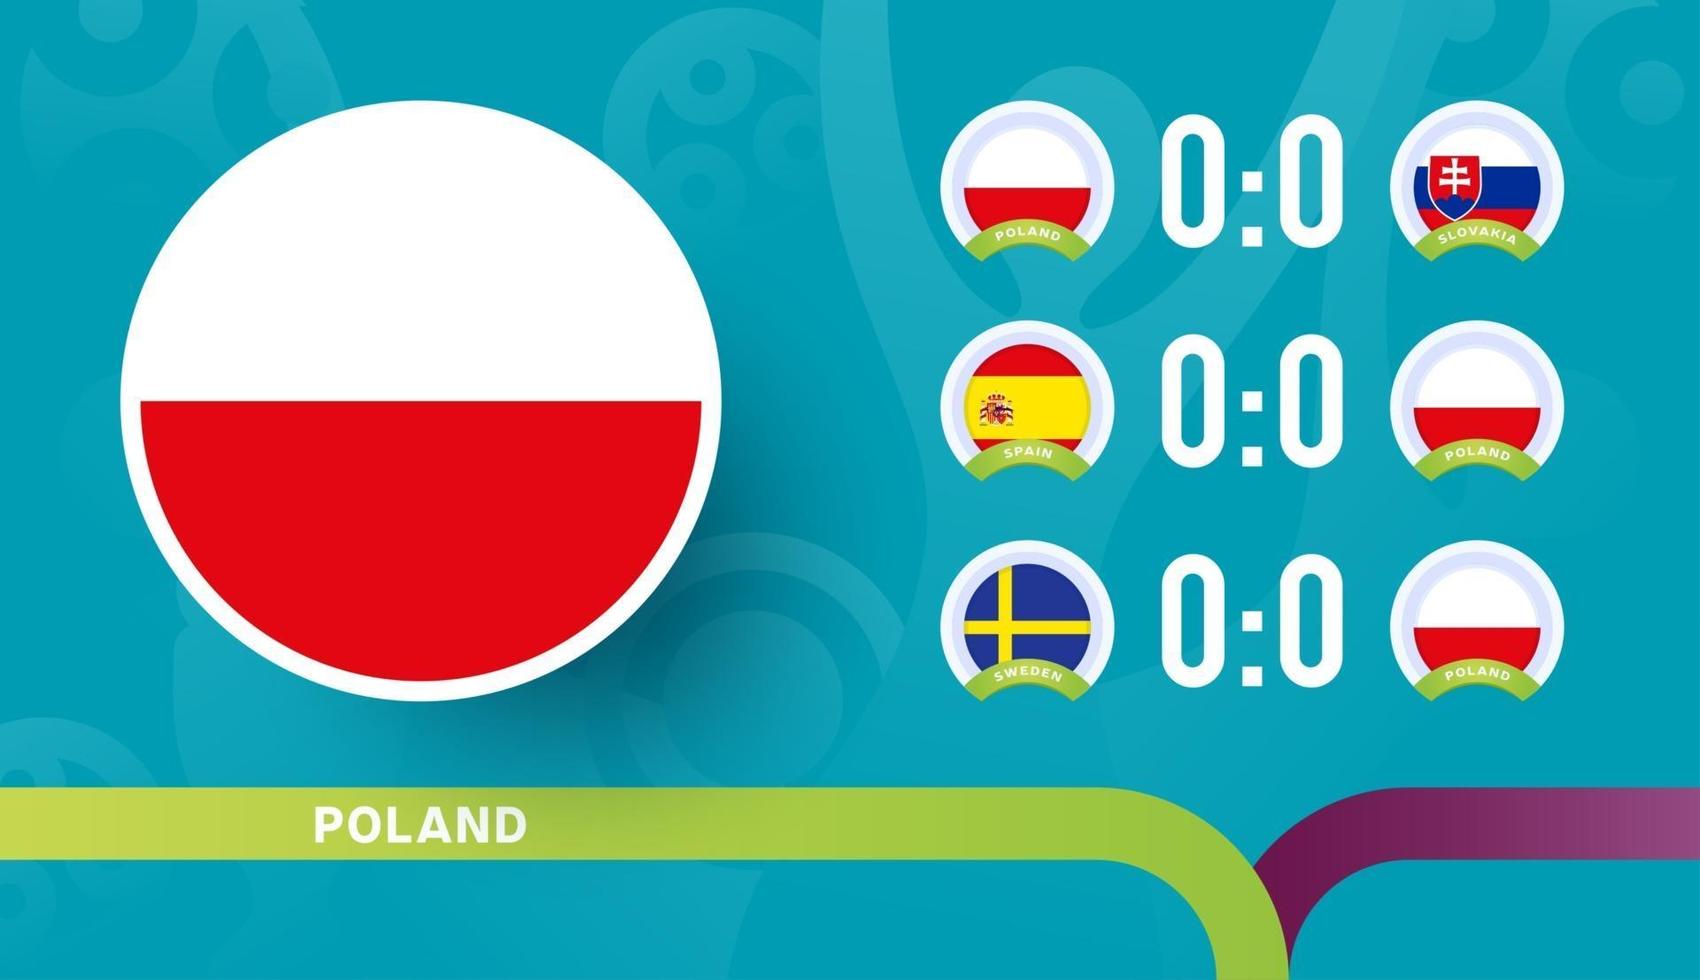 la nazionale polacca programma le partite della fase finale del campionato di calcio 2020. illustrazione vettoriale delle partite di calcio 2020